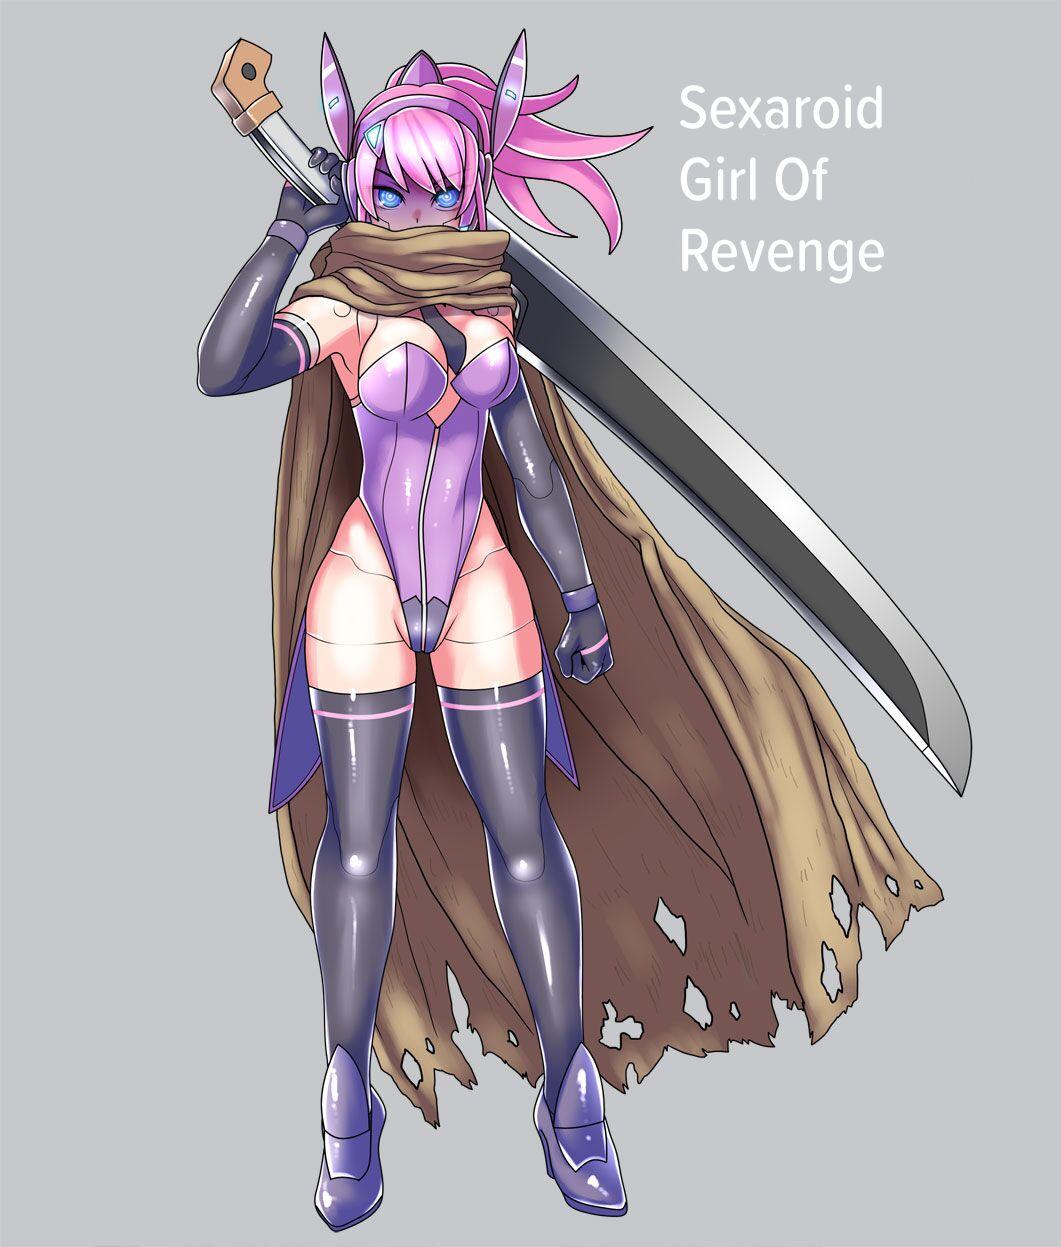 Fukushuu no Sekusaroido Shoujo | Sexaroid Girl of Revenge 0